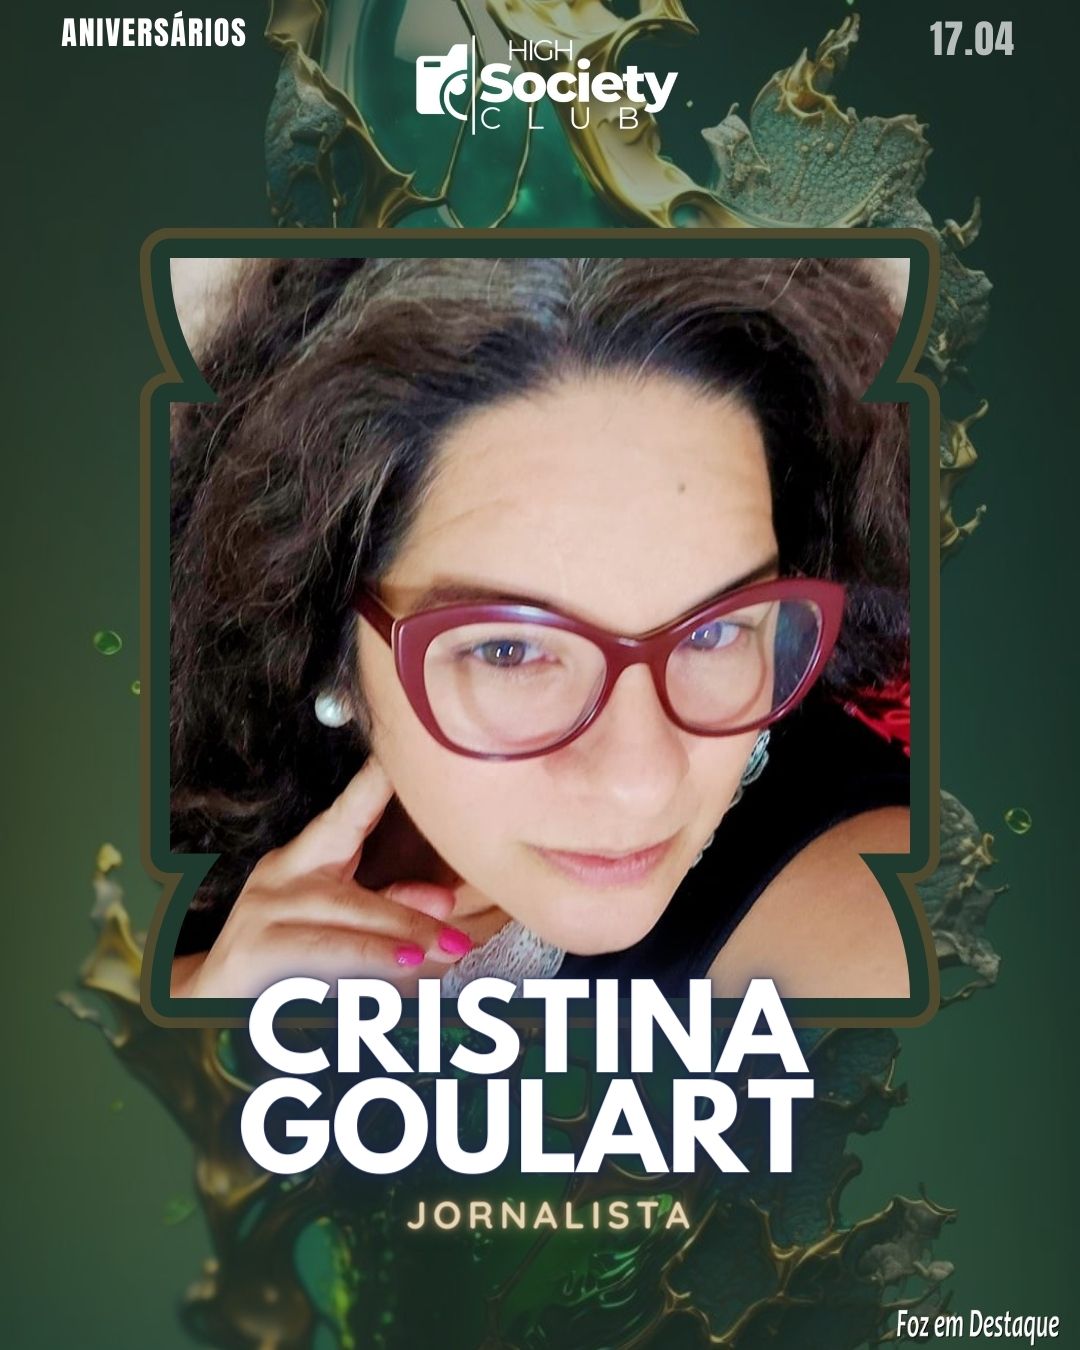 Cristina Goulart - Jornalista 
Aniversários 17 de Abril 2024  High Society Club Foz em Destaque